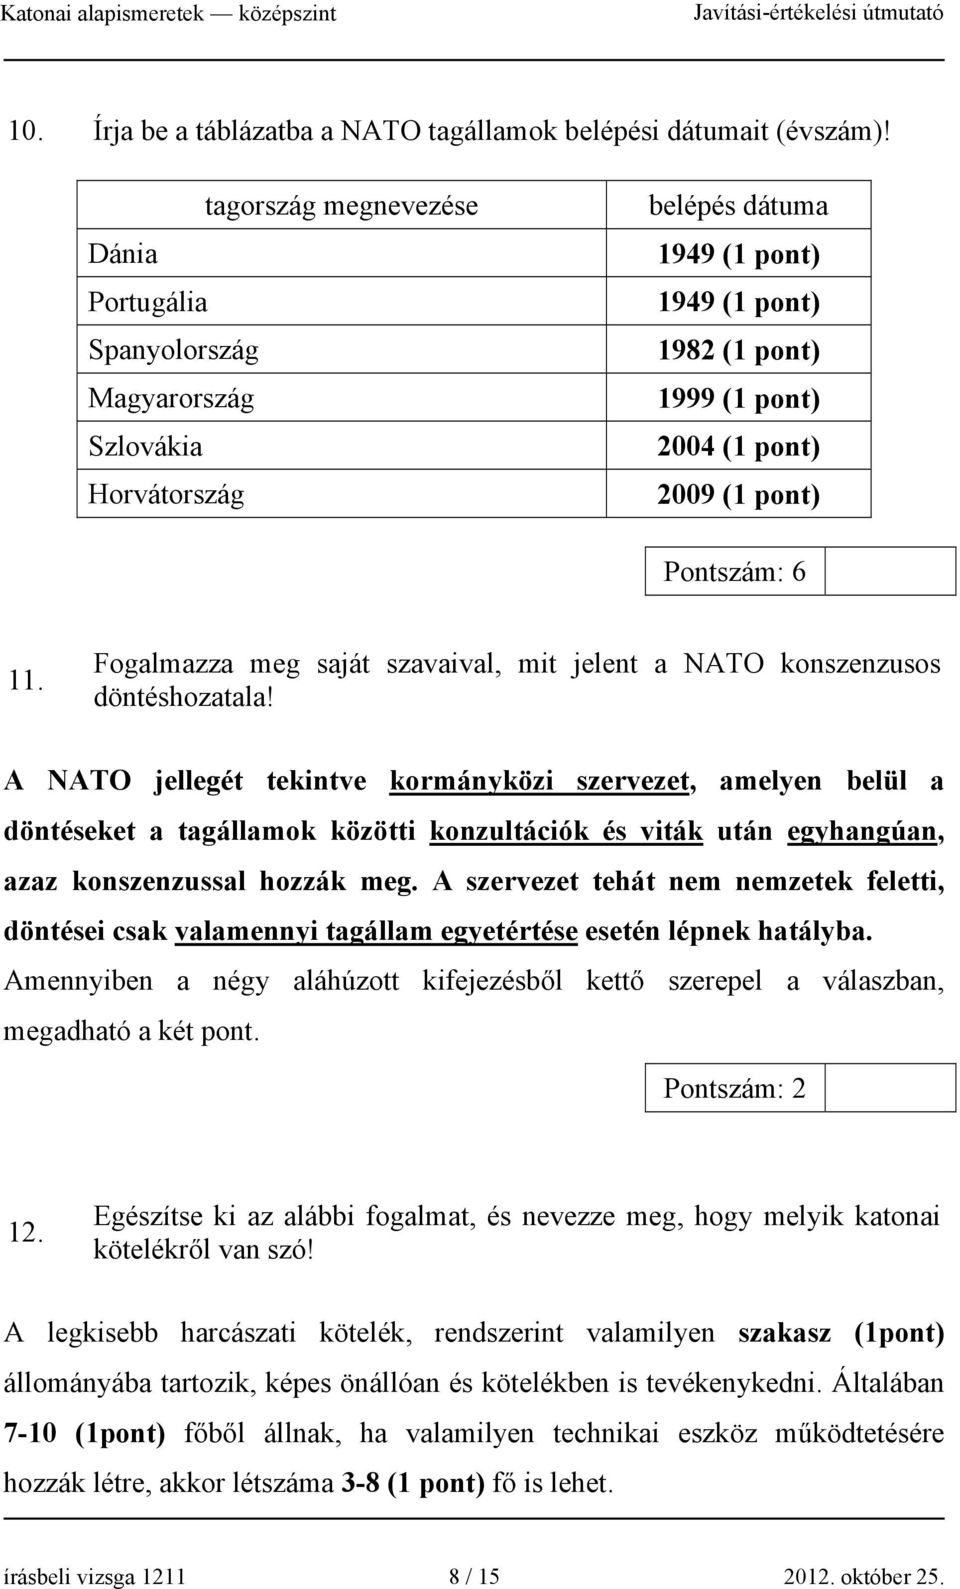 11. Fogalmazza meg saját szavaival, mit jelent a NATO konszenzusos döntéshozatala!